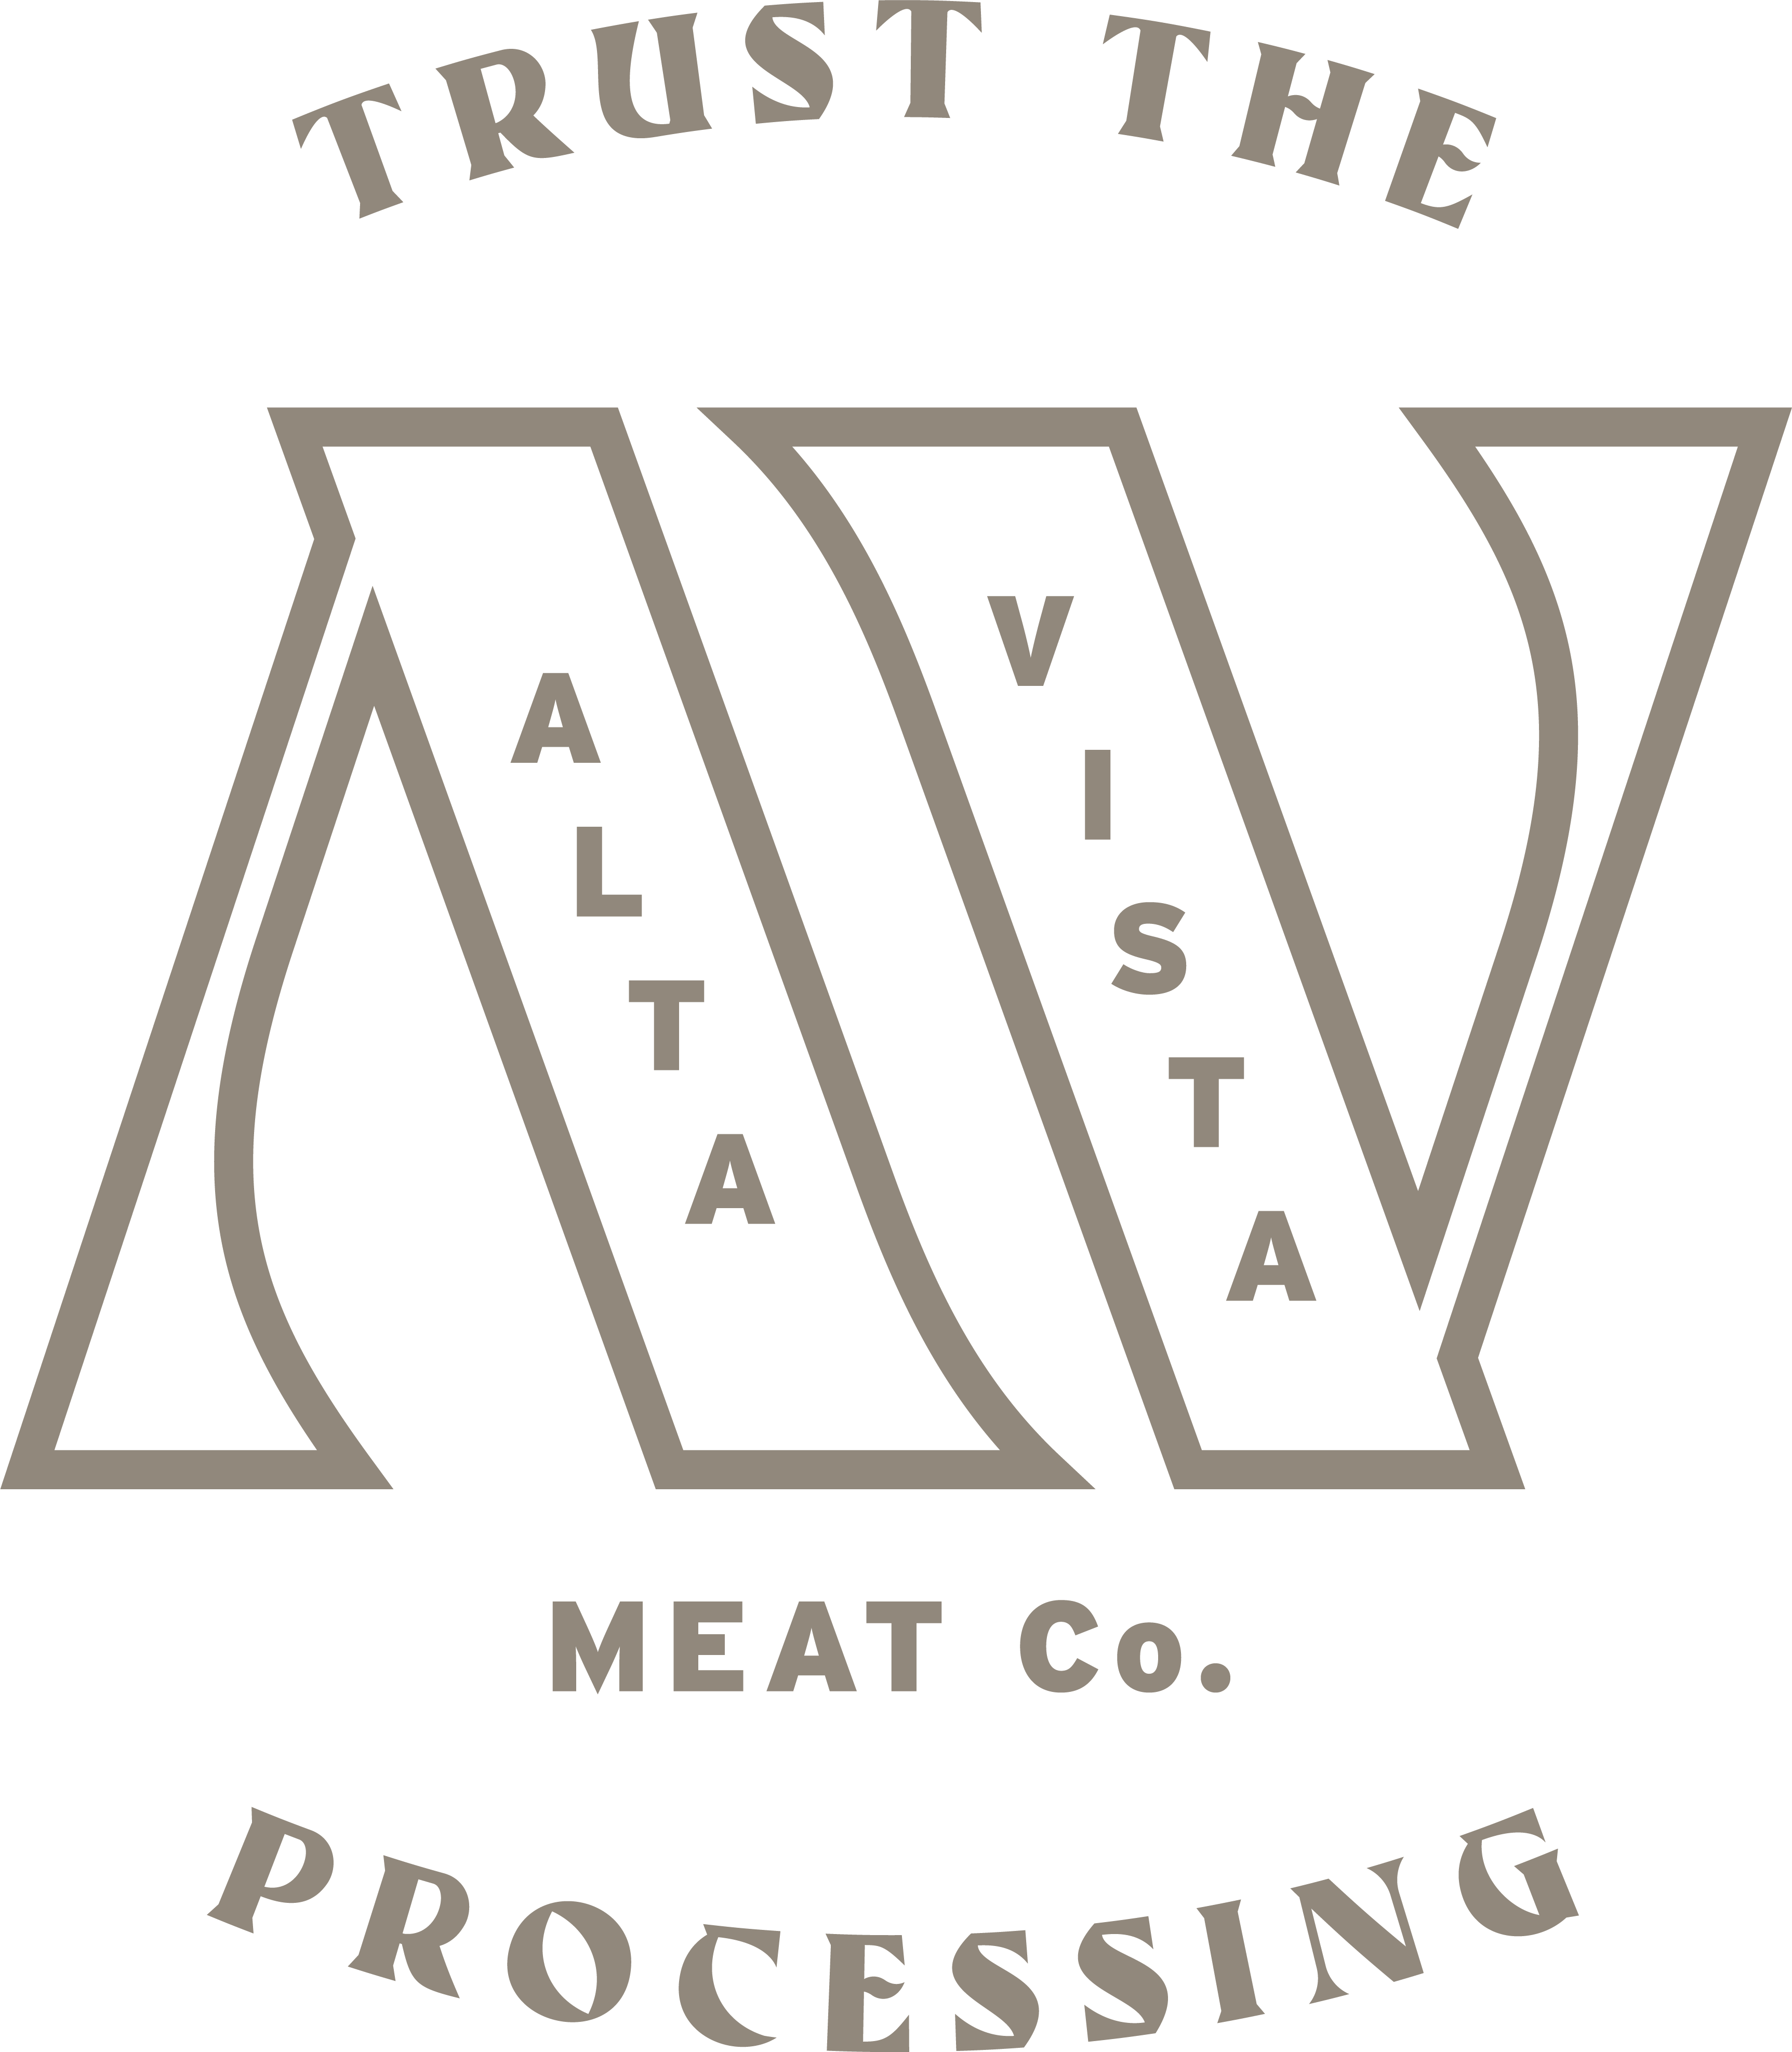 Alta Vista Meat Co